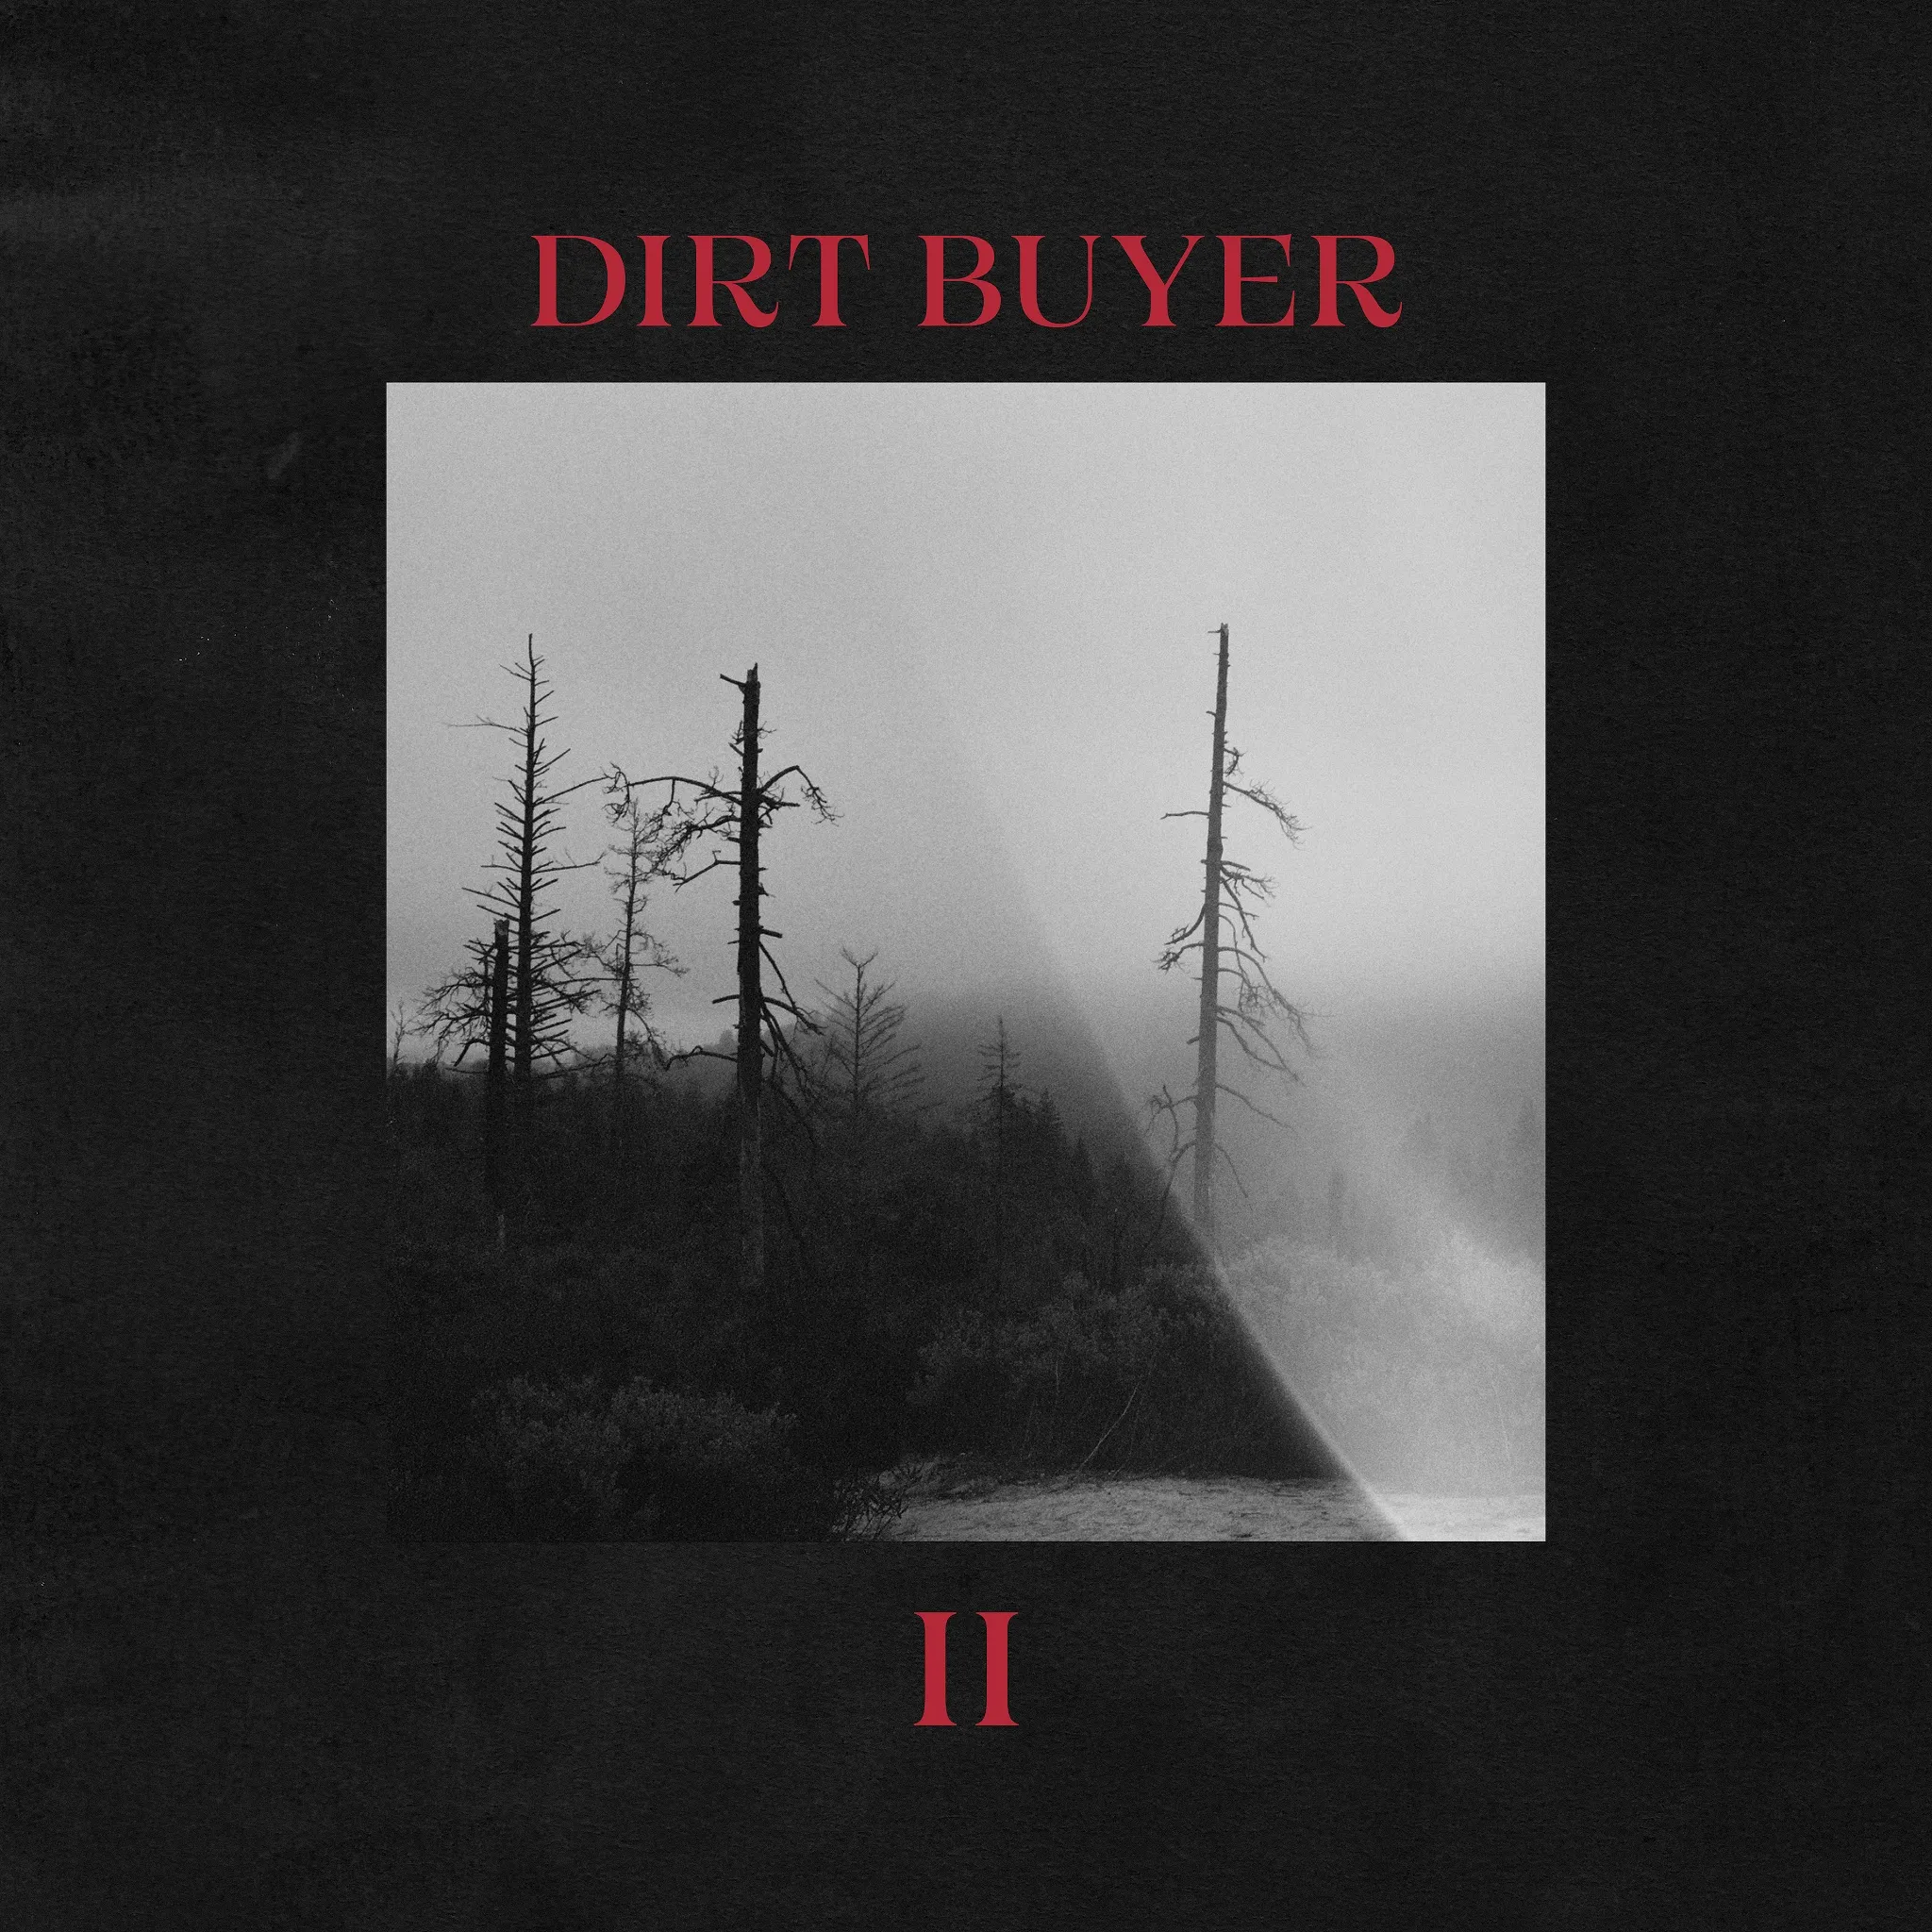 Dirt Buyer - Dirt Buyer II artwork